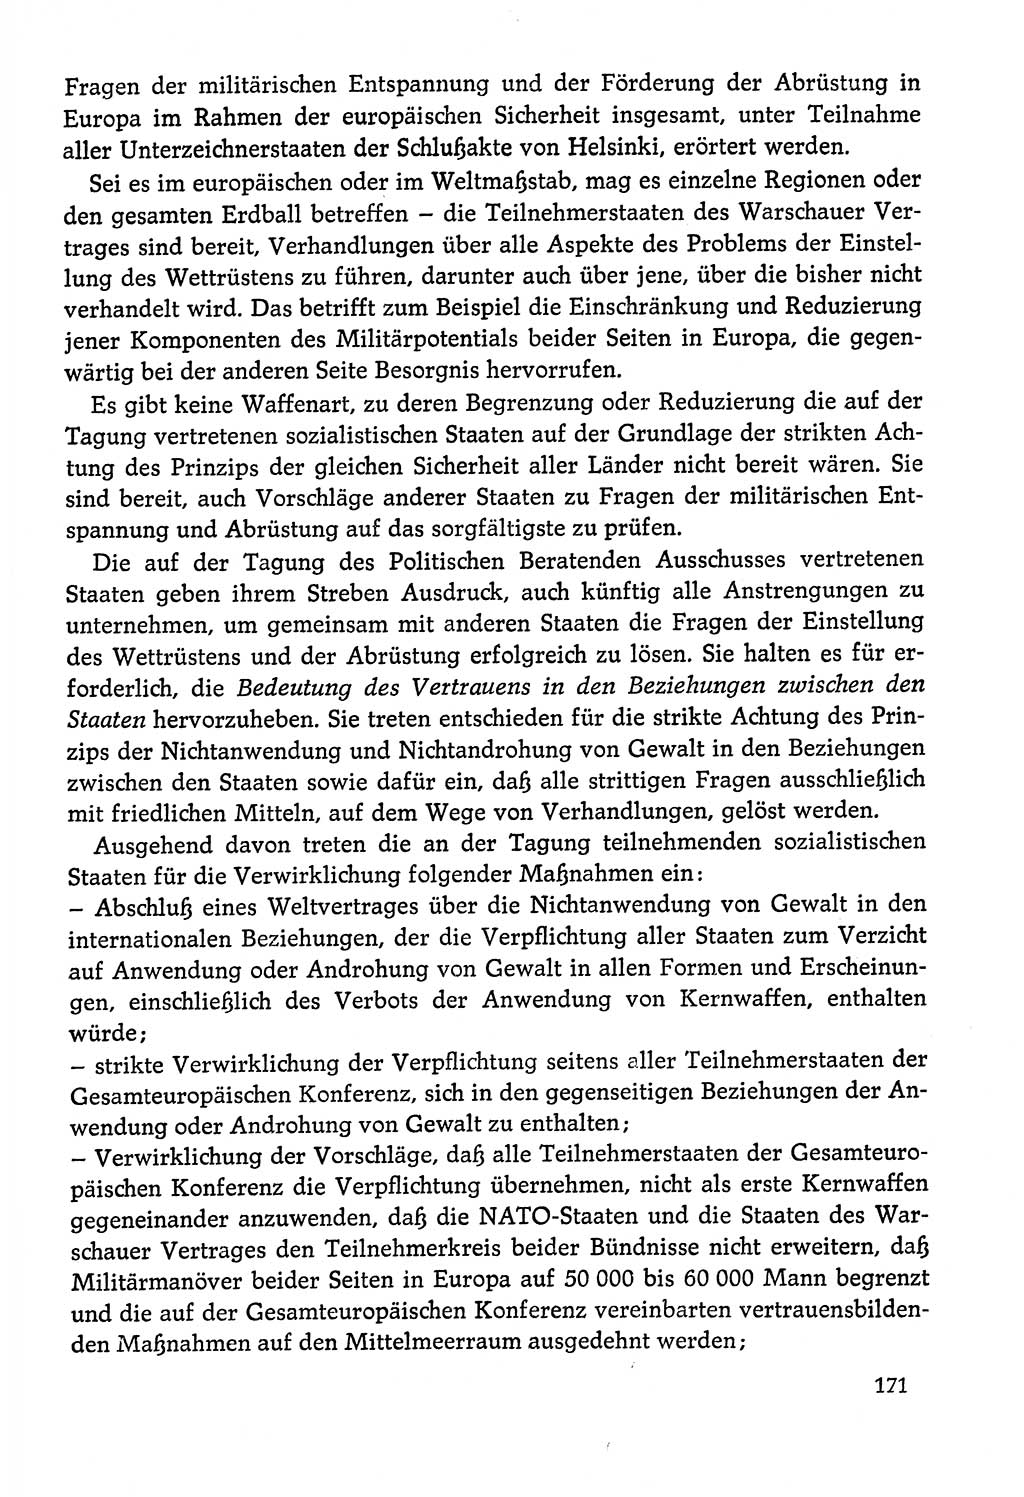 Dokumente der Sozialistischen Einheitspartei Deutschlands (SED) [Deutsche Demokratische Republik (DDR)] 1978-1979, Seite 171 (Dok. SED DDR 1978-1979, S. 171)